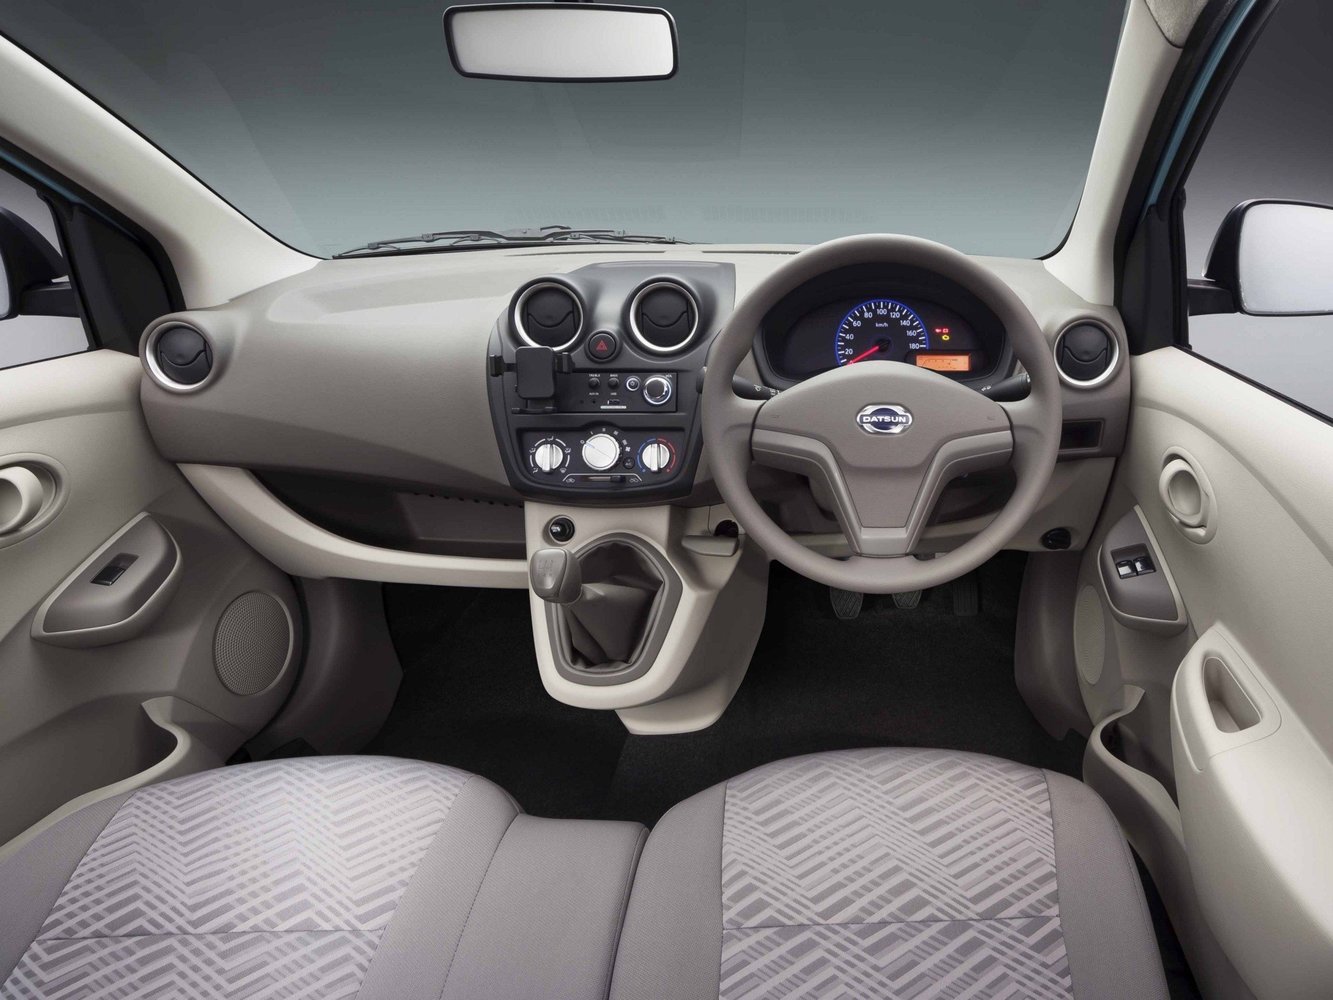 хэтчбек 5 дв. Datsun GO 2014 - 2016г выпуска модификация 1.2 MT (69 л.с.)